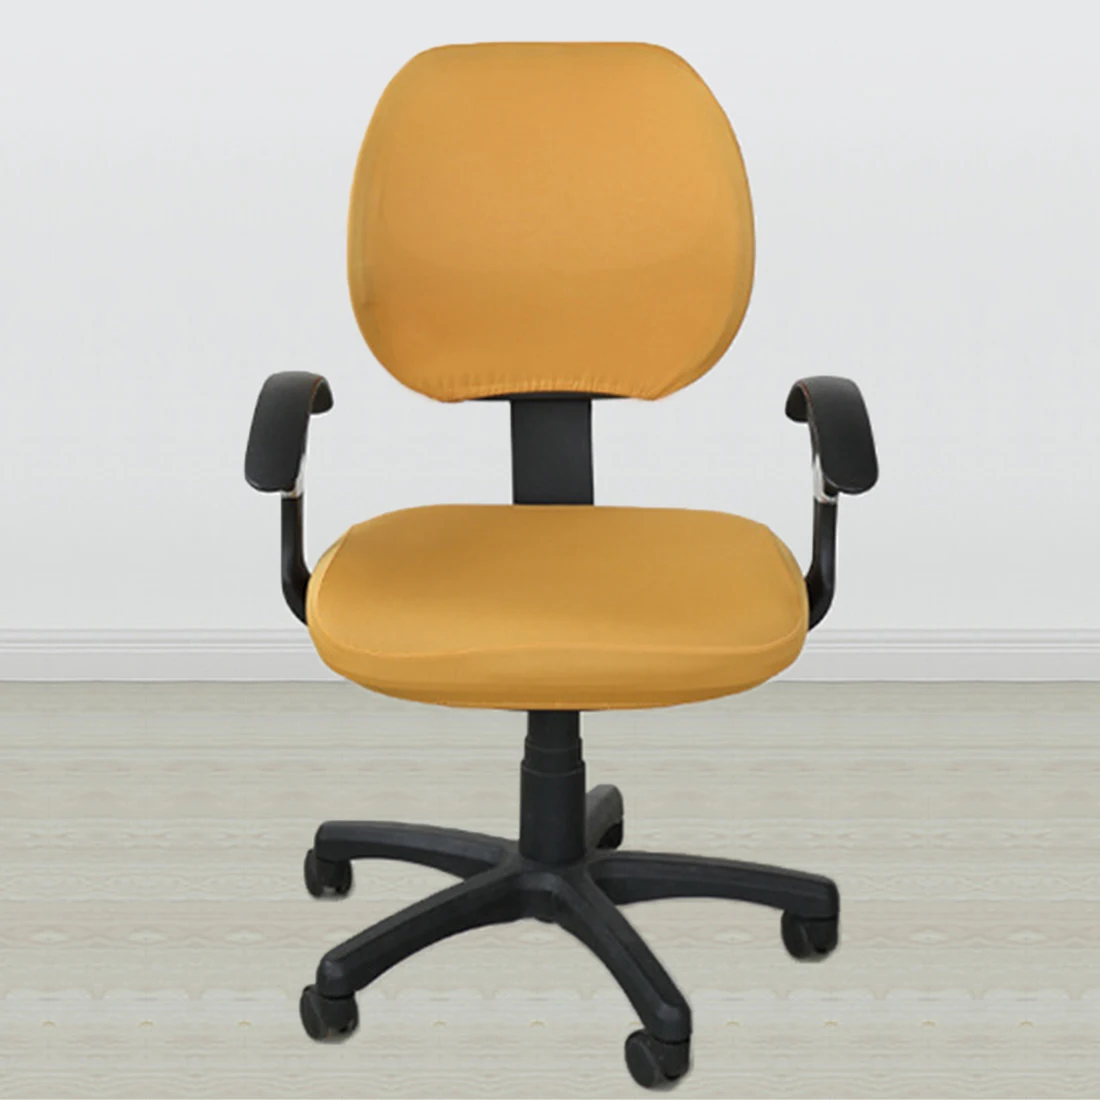 20 цветов, растягивающиеся чехлы для мебели из спандекса для компьютерных стульев, офисных стульев Sillas Comedor, легко моющиеся, без подлокотника - Цвет: orange